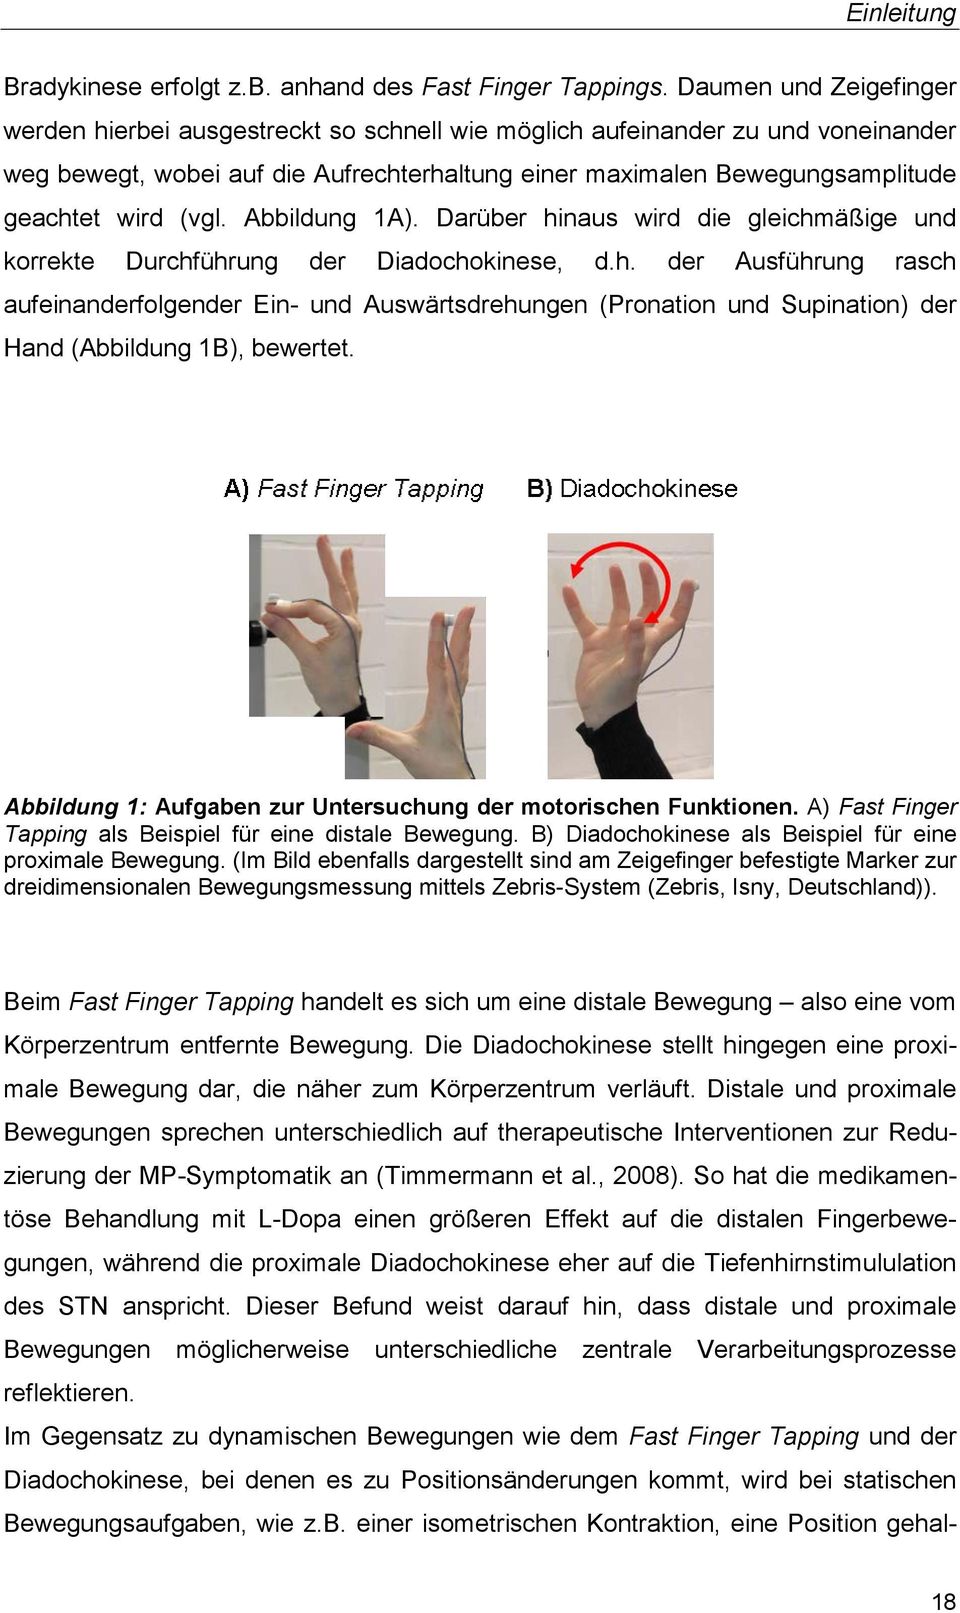 (vgl. Abbildung 1A). Darüber hinaus wird die gleichmäßige und korrekte Durchführung der Diadochokinese, d.h. der Ausführung rasch aufeinanderfolgender Ein- und Auswärtsdrehungen (Pronation und Supination) der Hand (Abbildung 1B), bewertet.